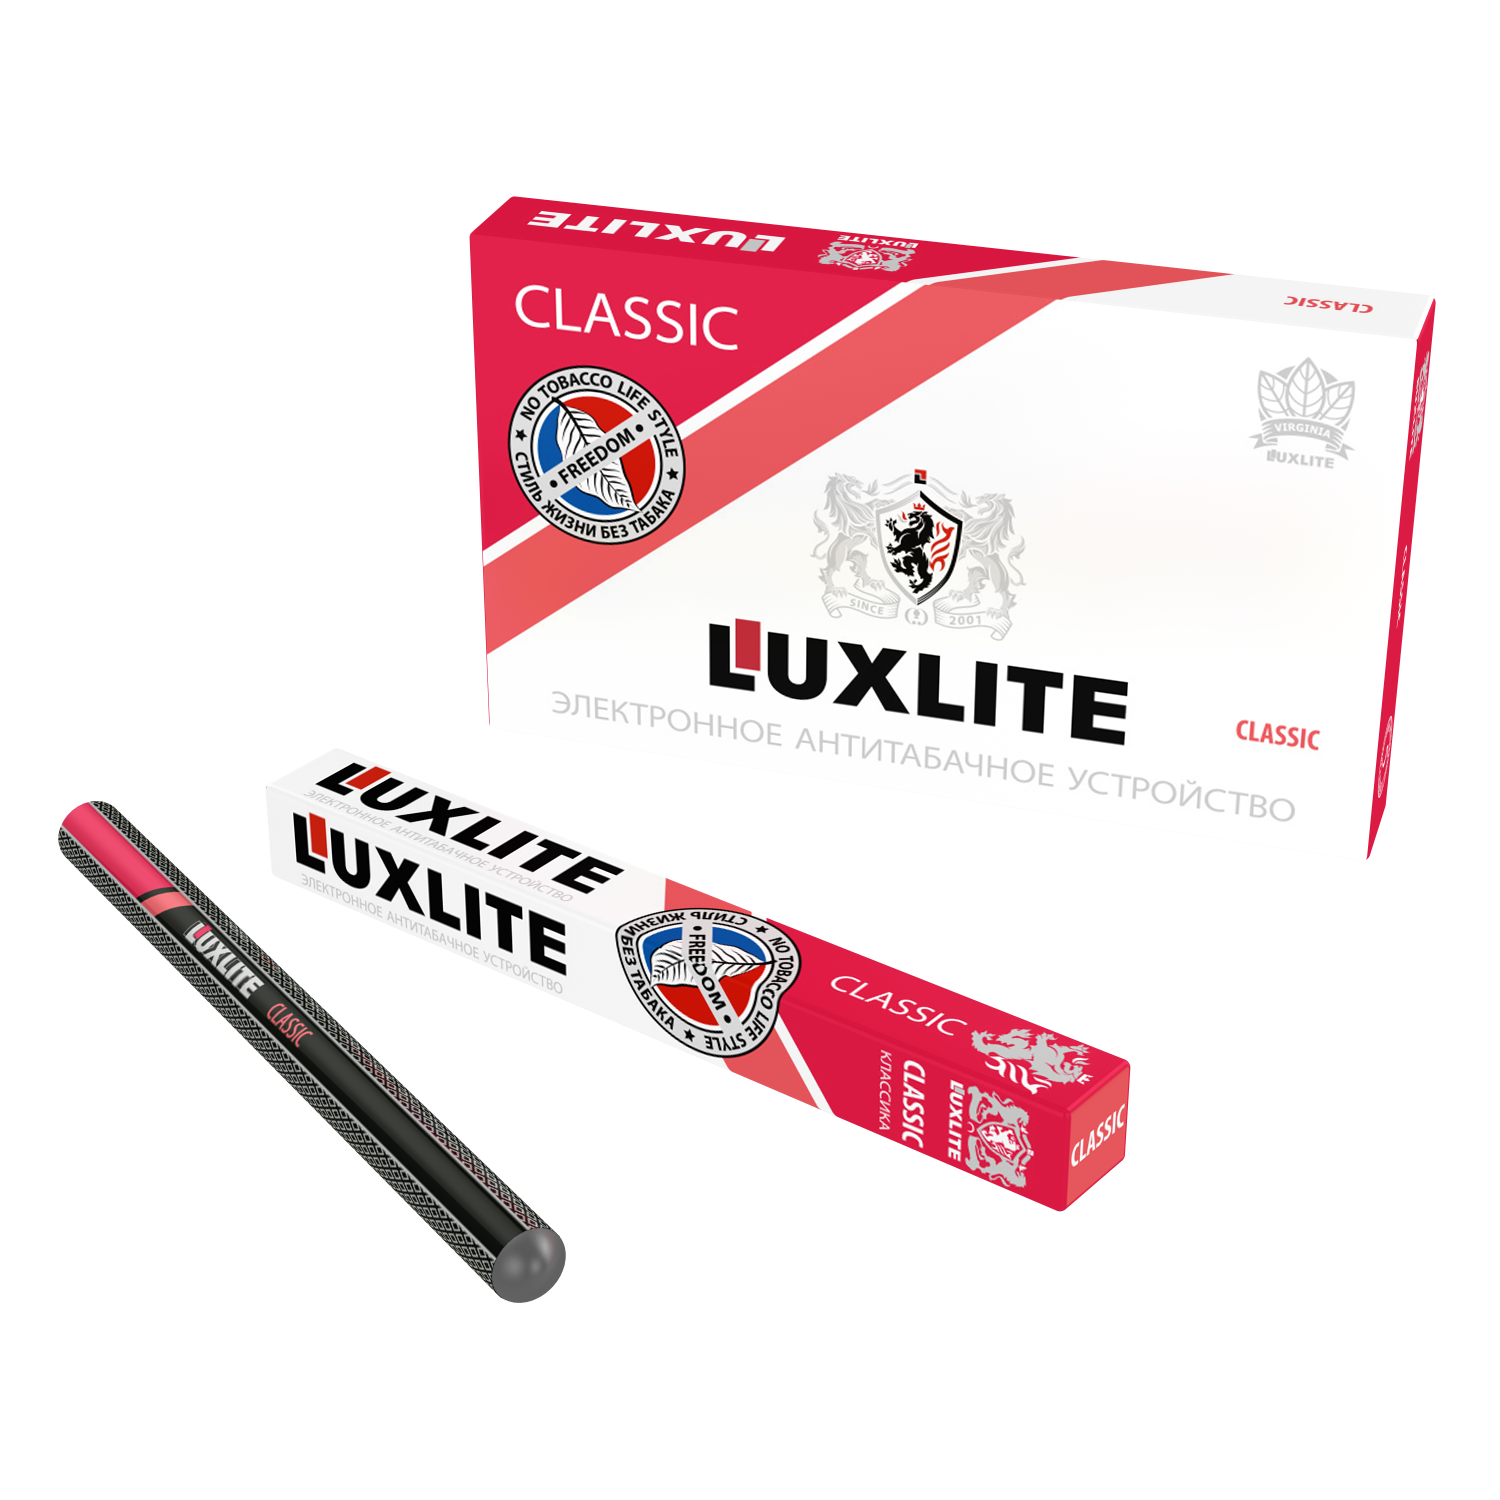 Дешевая одноразовая сигарета купить. Одноразовые электронные сигареты Люкслайт. Электронная сигарета Luxlite Classic. Одноразовые сигареты Luxlite. Luxlite электронные сигареты без никотина.